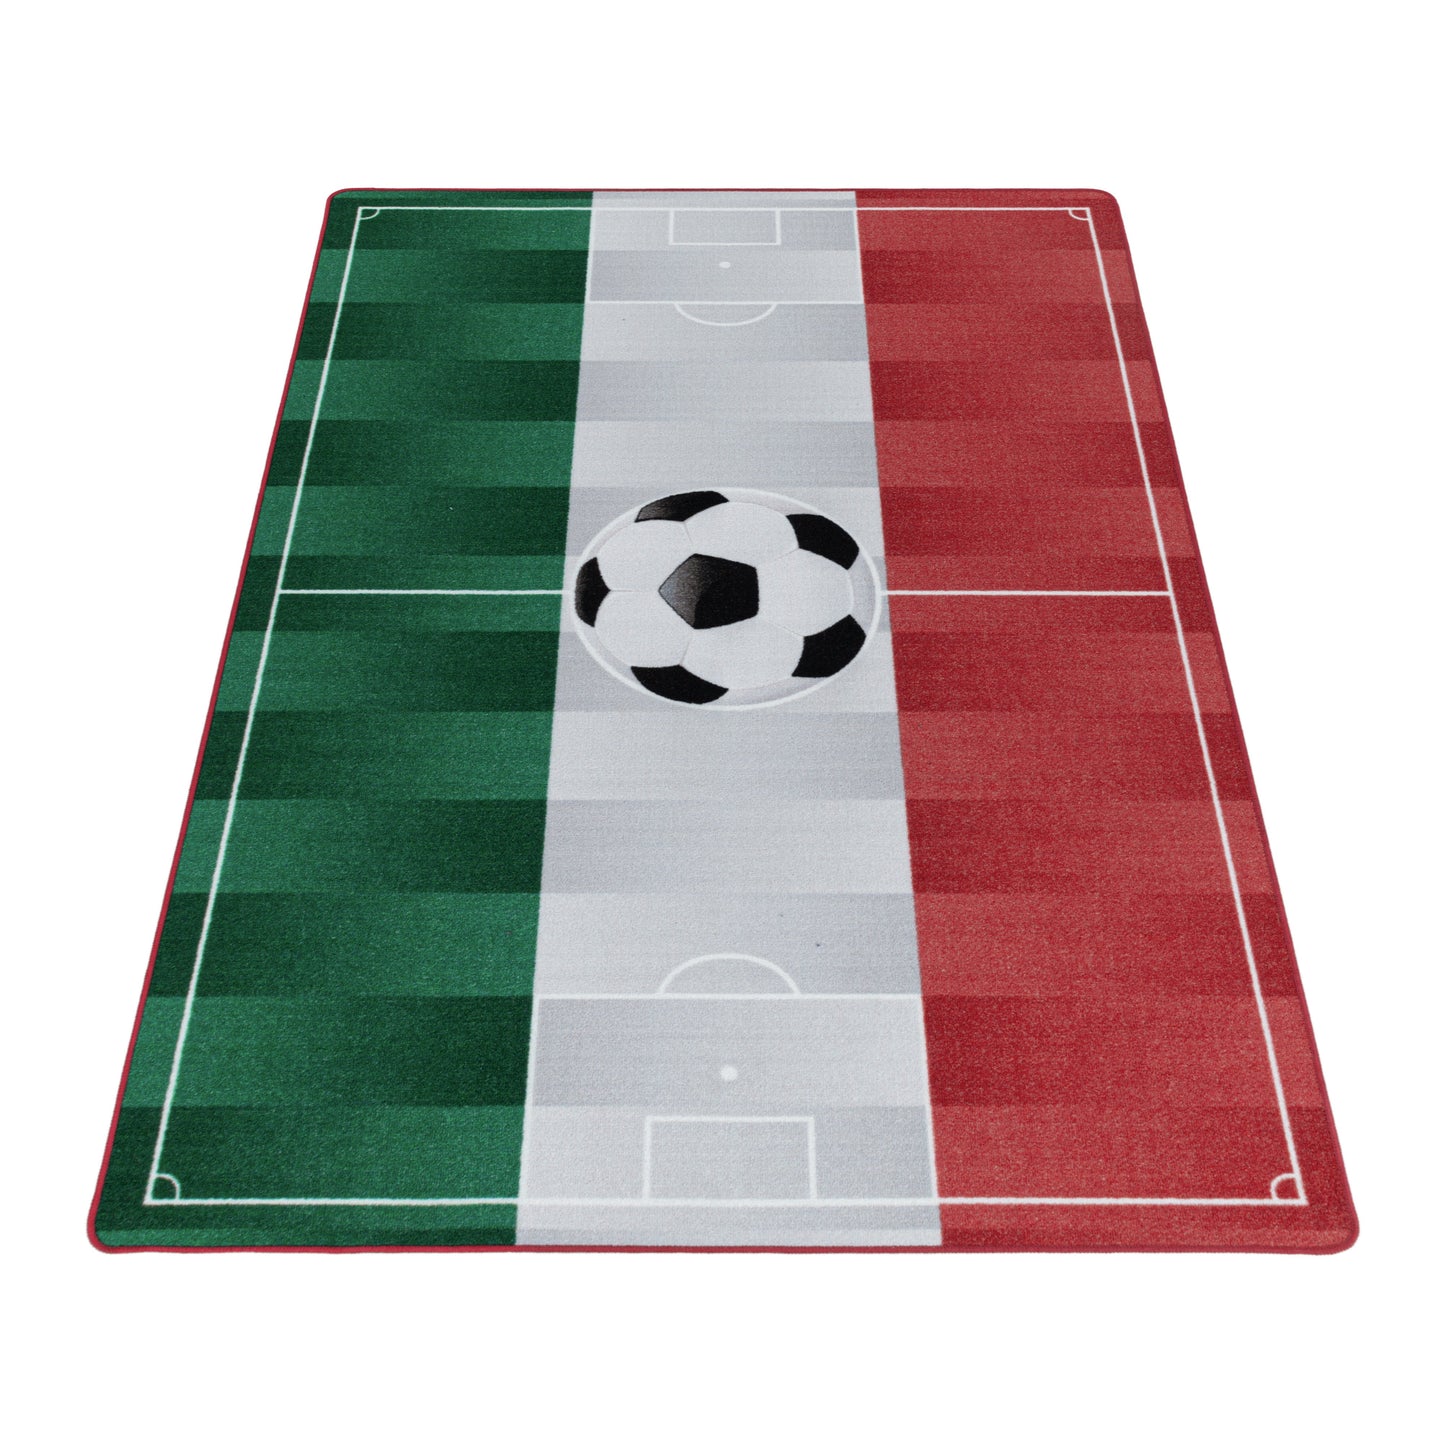 Kurzflor Teppich Kinderteppich Kinderzimmer Spielteppich Fussball Italien Weiss